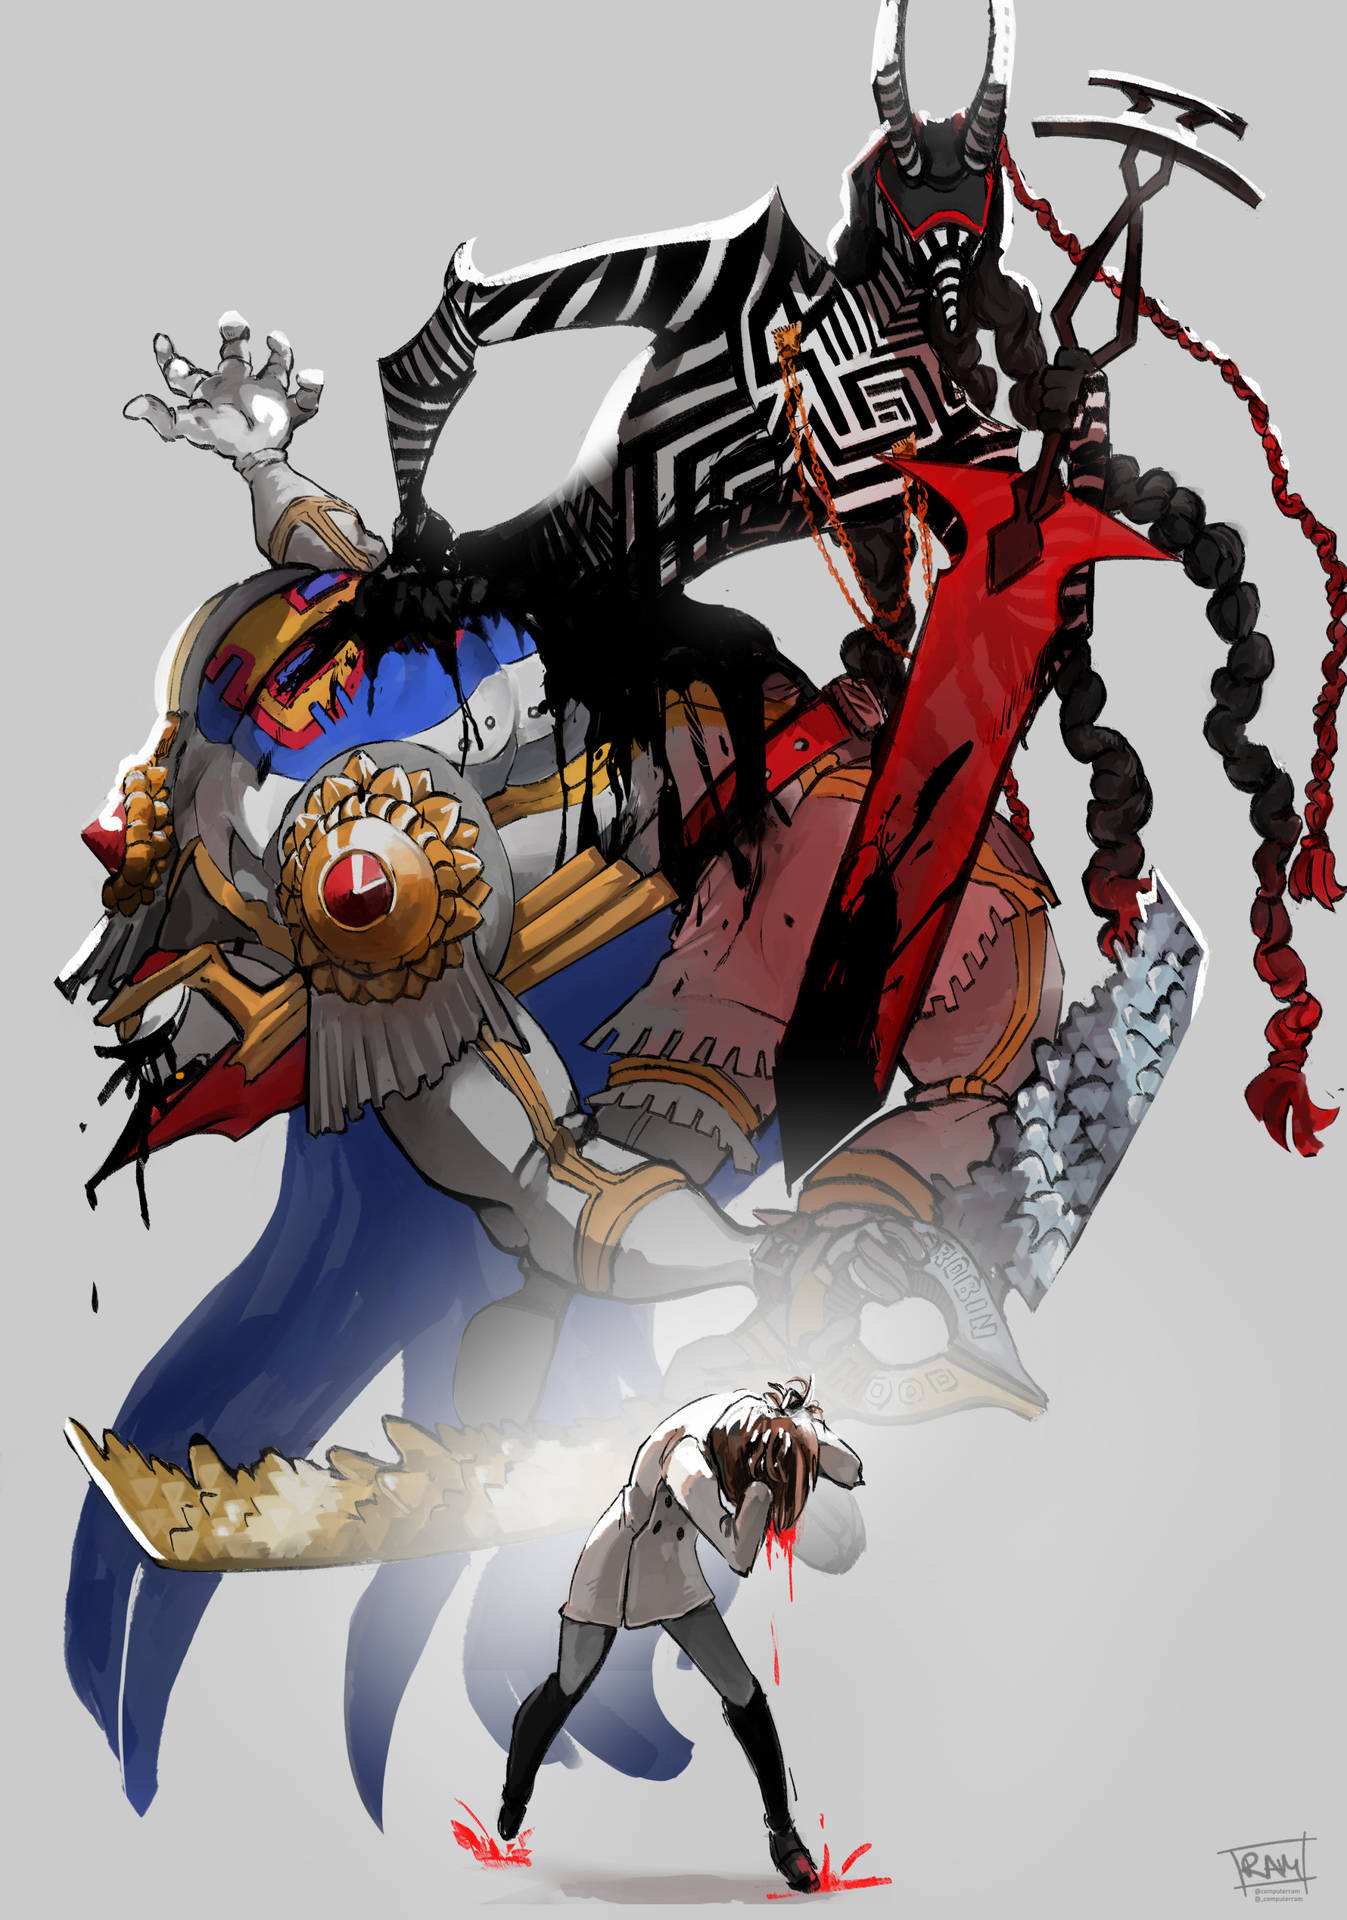 Persona 5 Royal Striped Creature Wallpaper